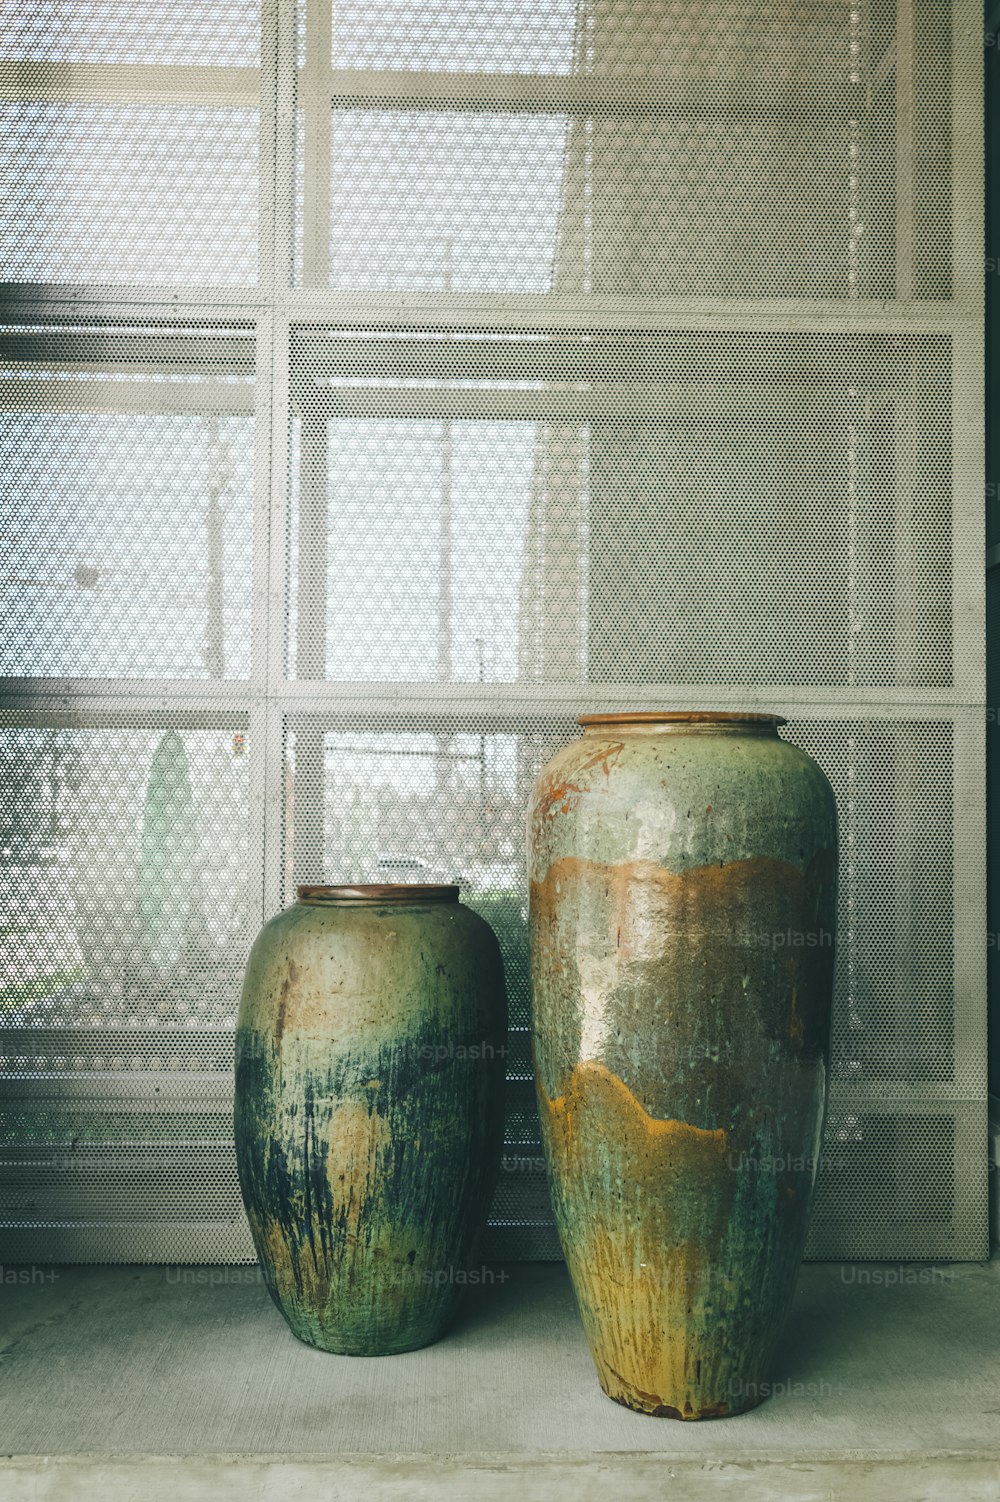 Dos jarrones verdes sentados uno al lado del otro frente a una ventana